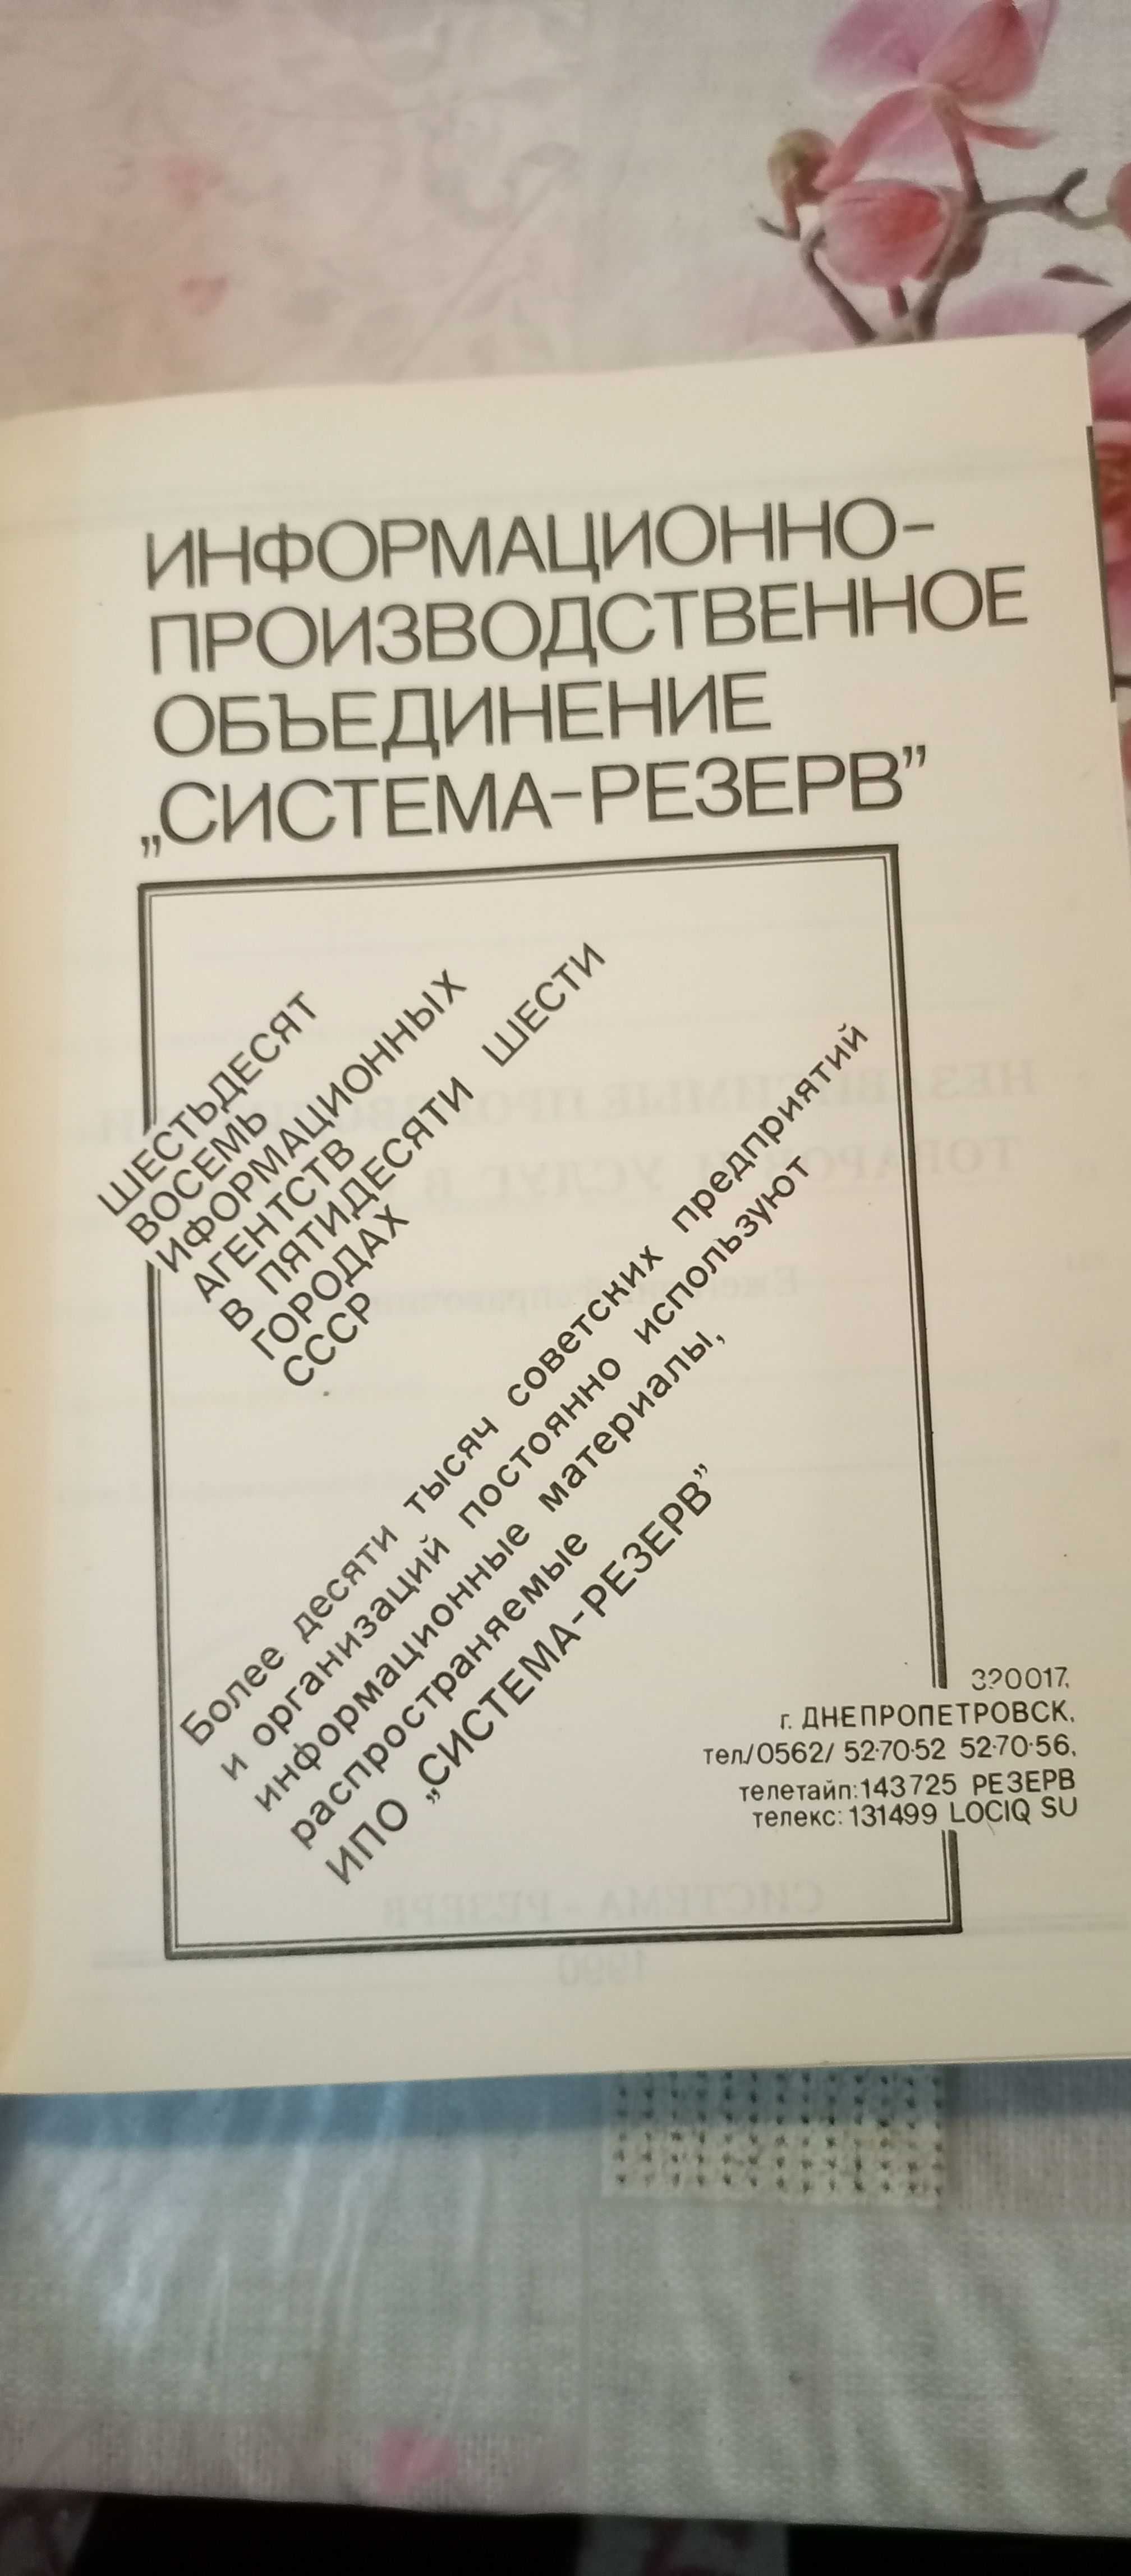 Независимые производители товаров и услуг в СССР 1990